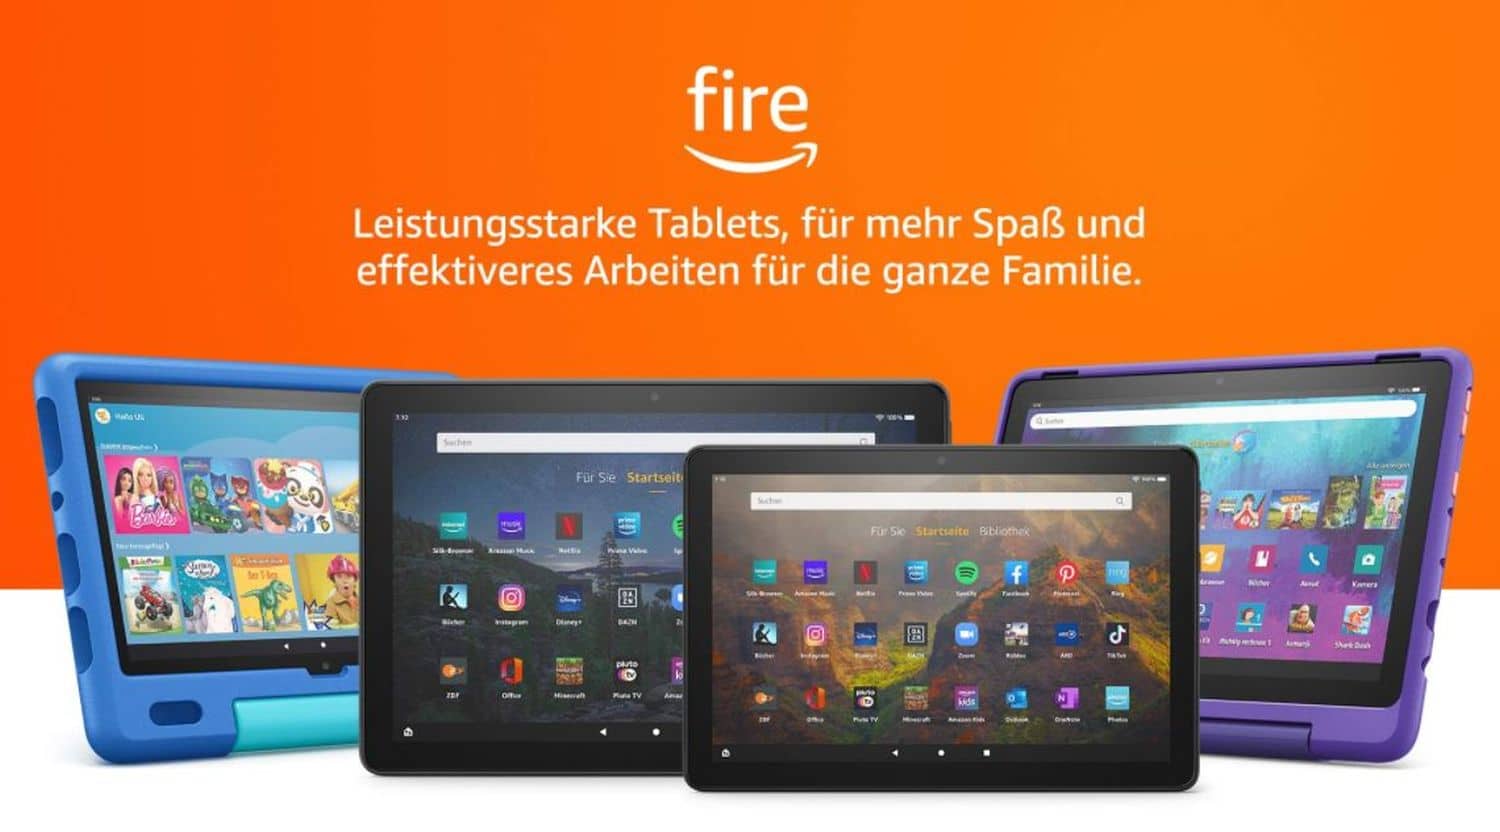 Android-Amazon-r-stet-die-Fire-Tablets-auf-das-neue-Fire-OS-basiert-jetzt-auf-Android-11-statt-Android-9